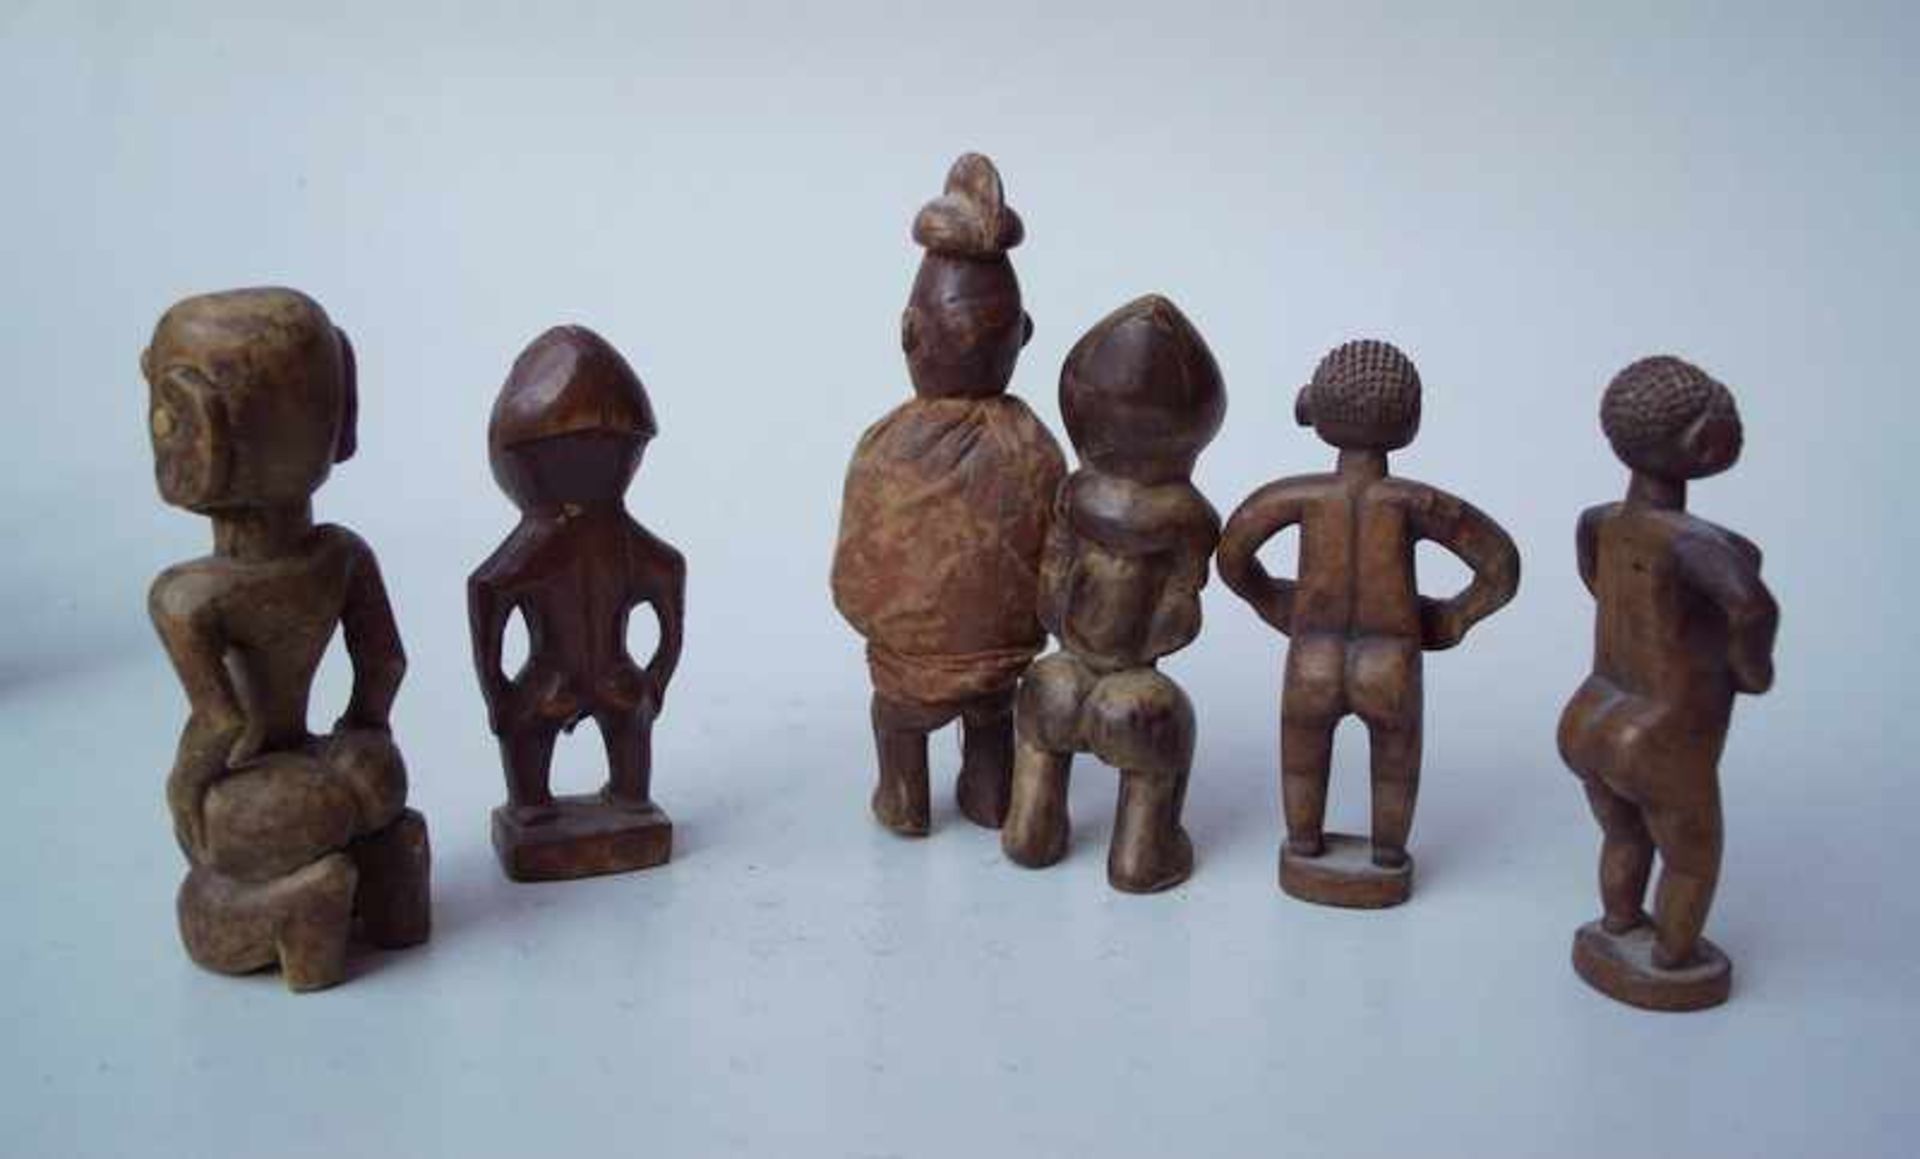 6 kleine, afrikanische AhnenfigurenHolz geschnitzt, 1 x mit Stoff kombiniert, Höhe ca.17cm. - Bild 2 aus 2